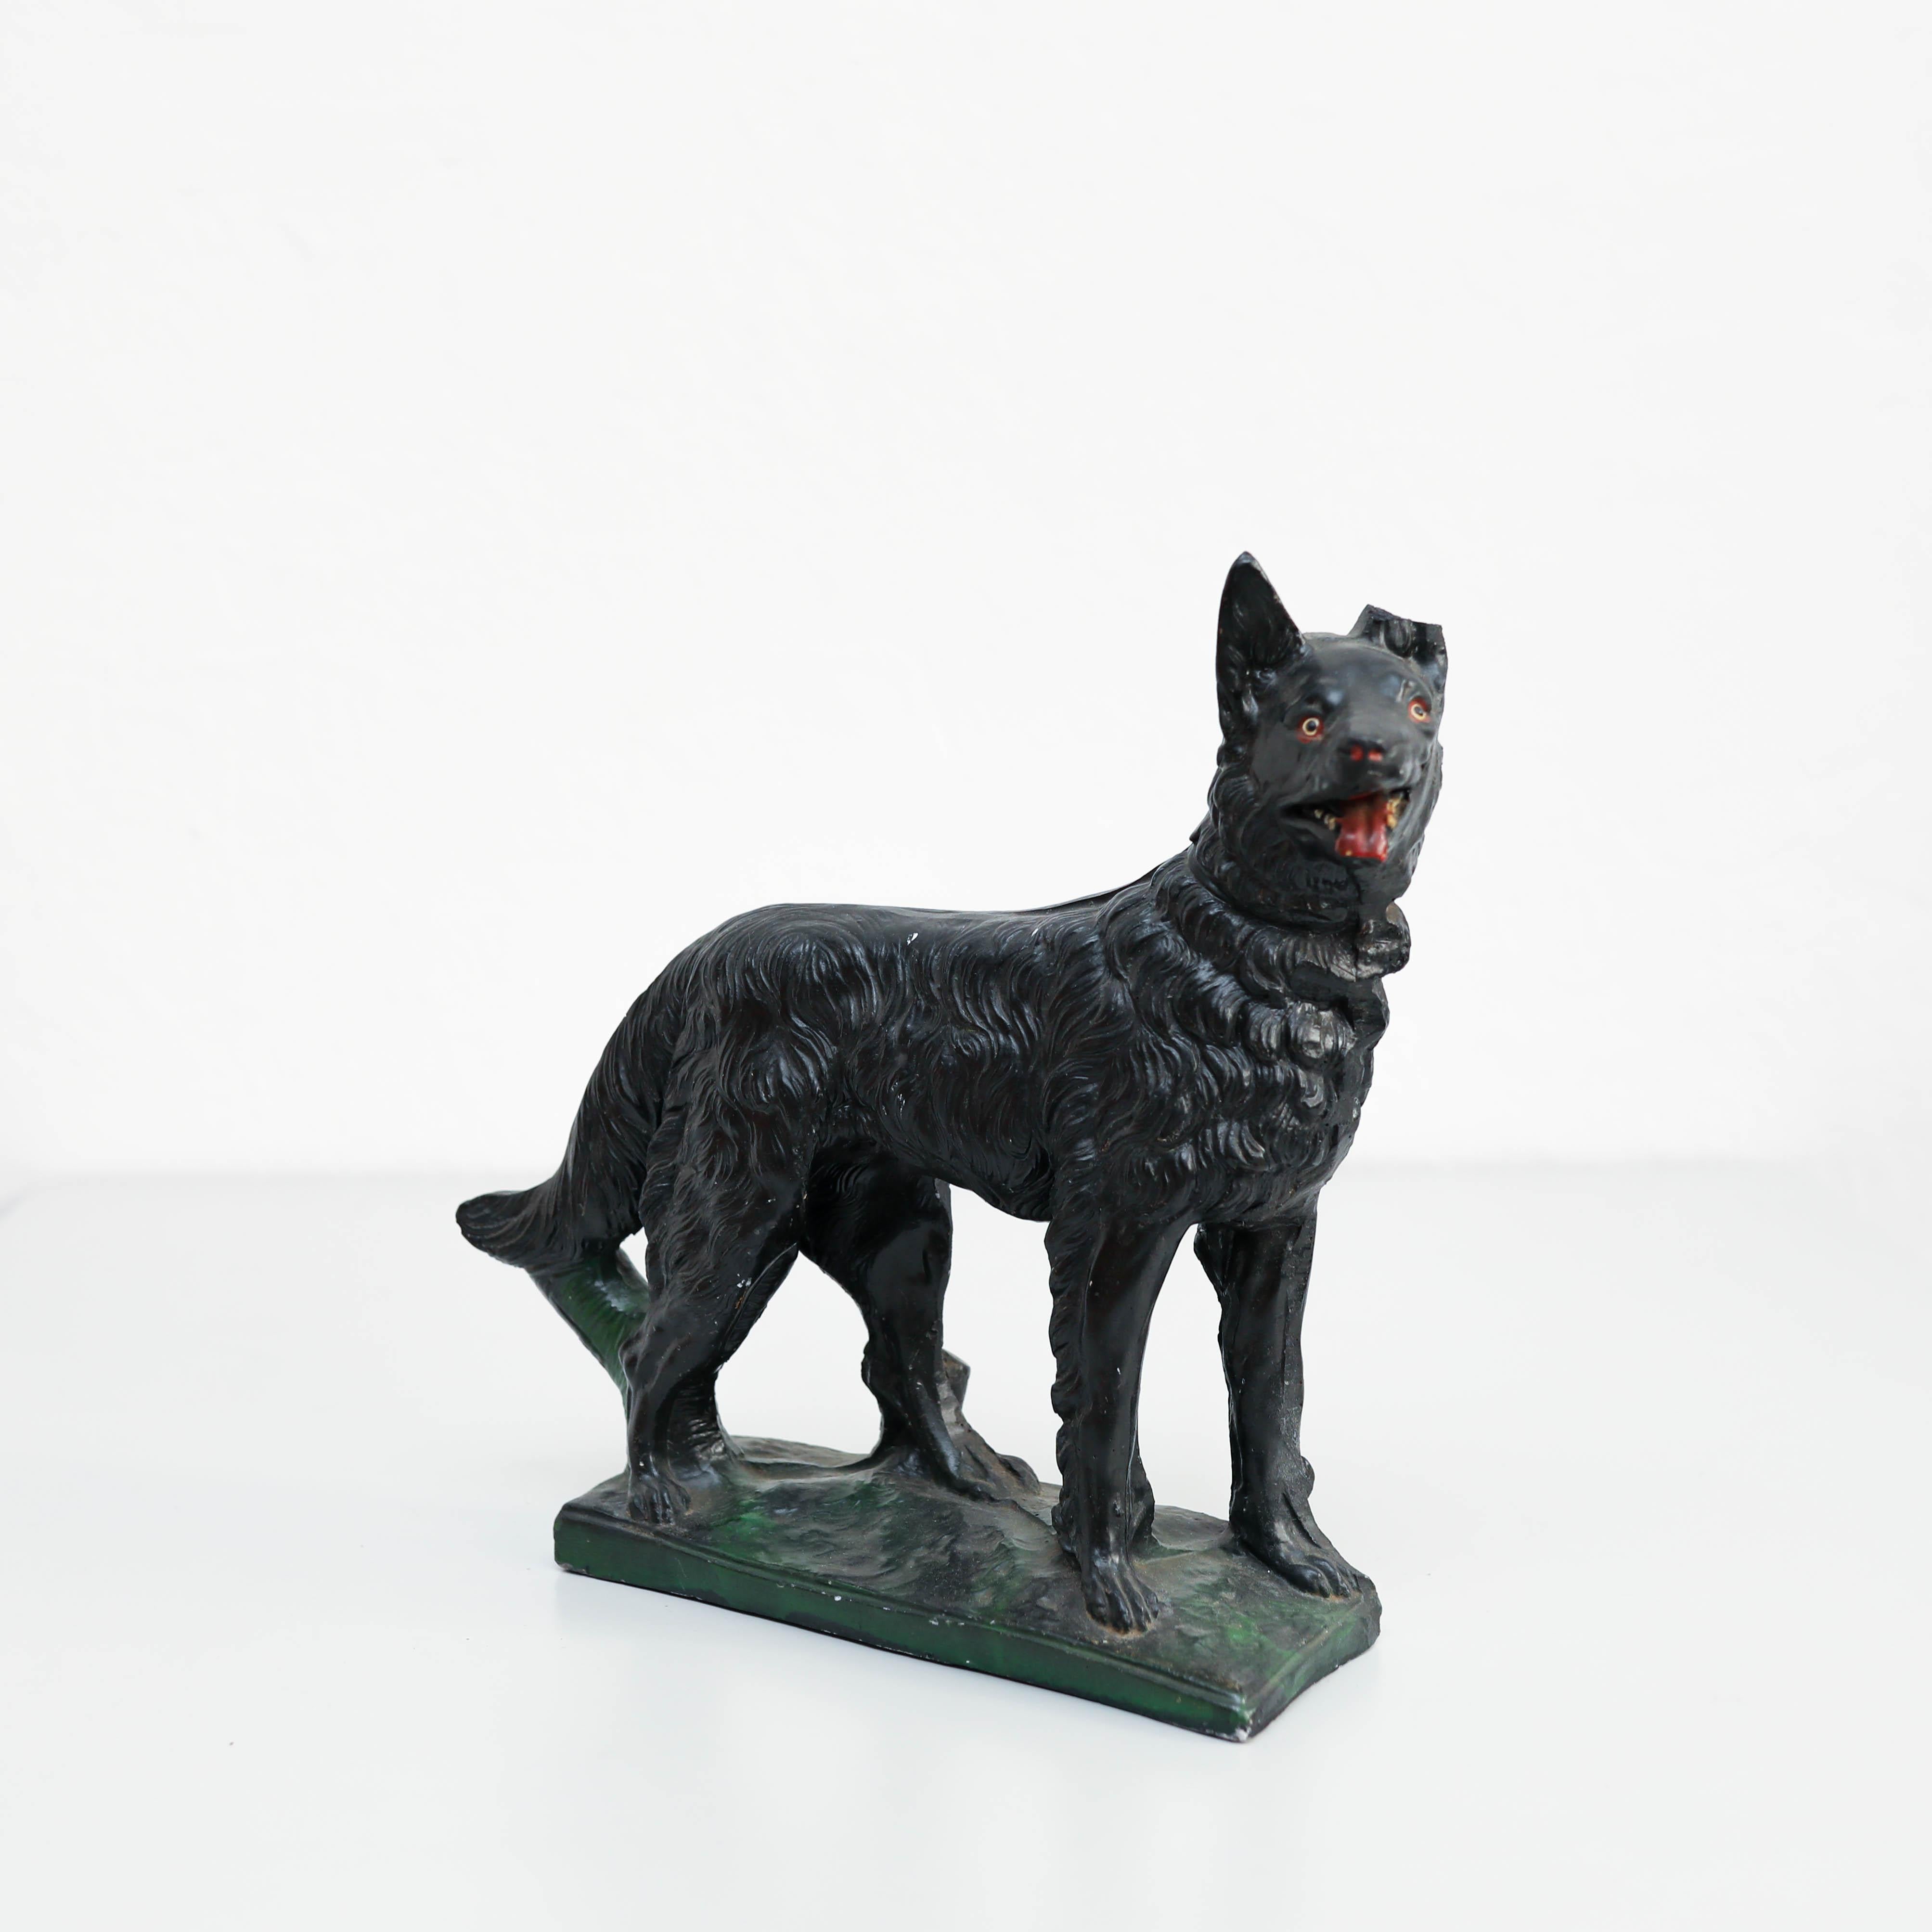 Lassen Sie sich von dem Charme dieser Vintage  Schäferhundfigur, eine reizvolle Ergänzung für Ihr Heim oder Ihre Sammlung. Diese rustikale Hundestatue, die um 1980 in Spanien hergestellt wurde, strahlt Charakter und Wärme aus und ist ein